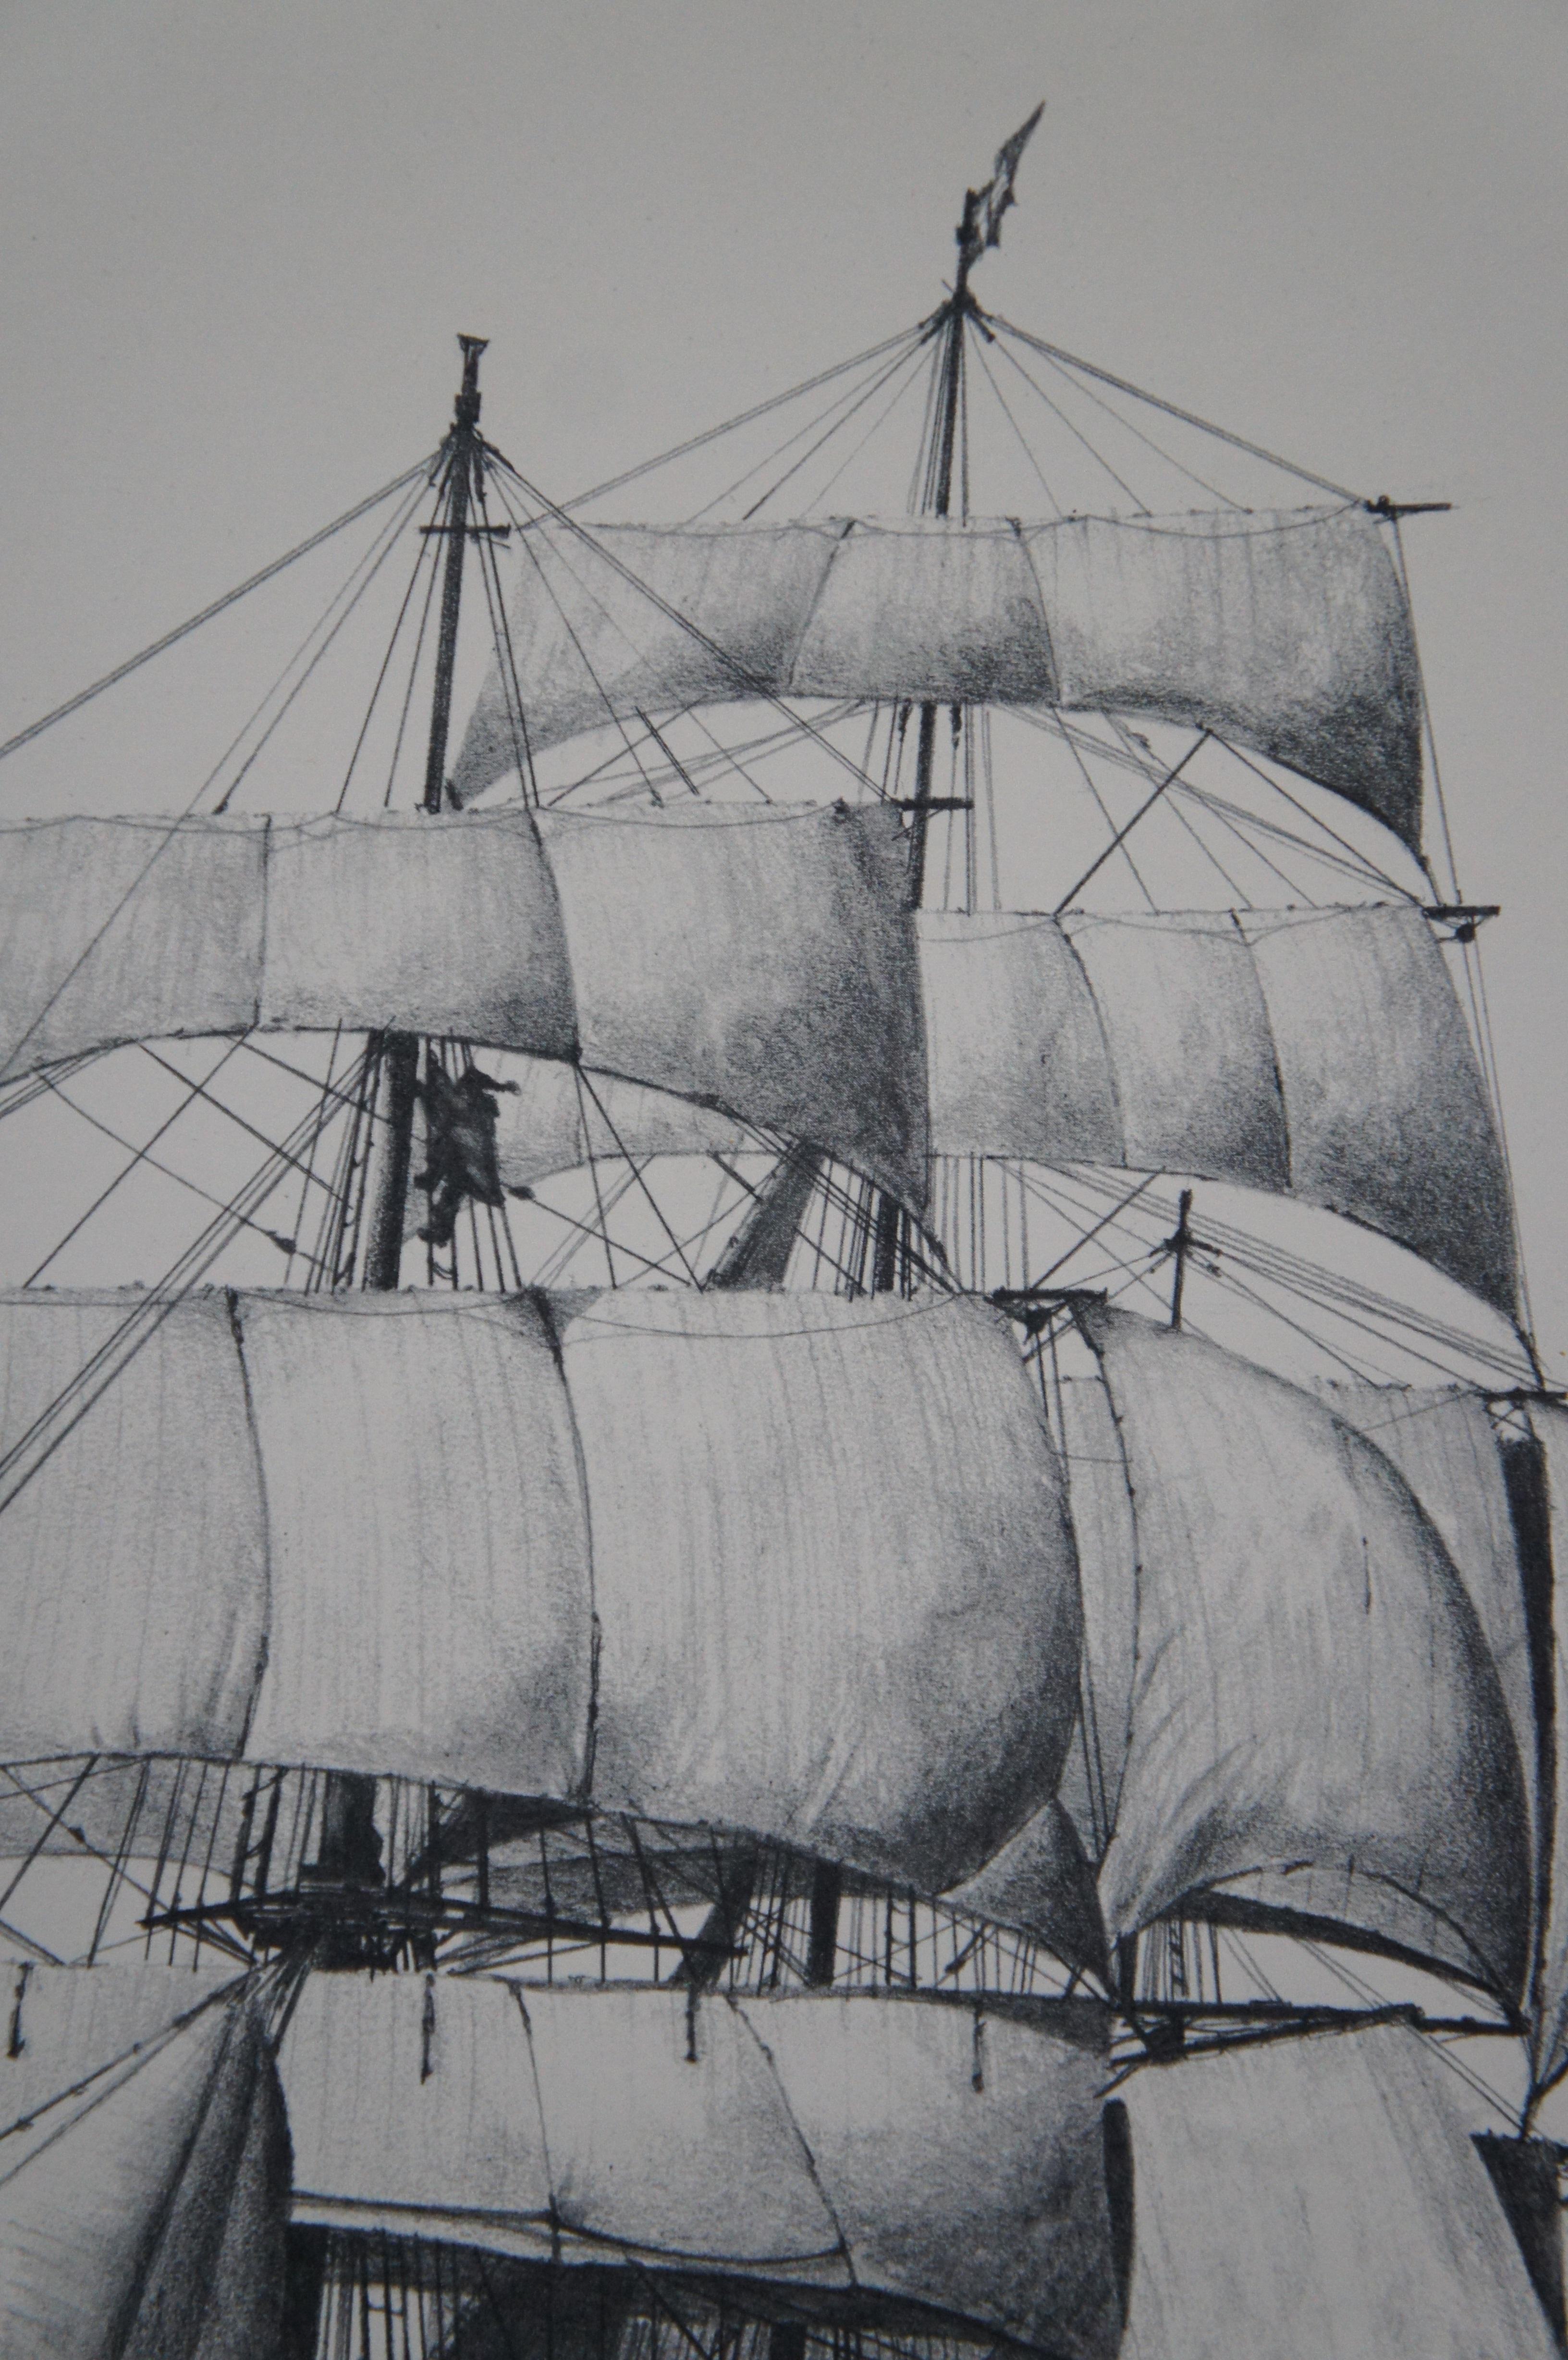 The Clipper Cutty Sark Tea Ship Nautical Maritime Lithograph Print Fowler 26